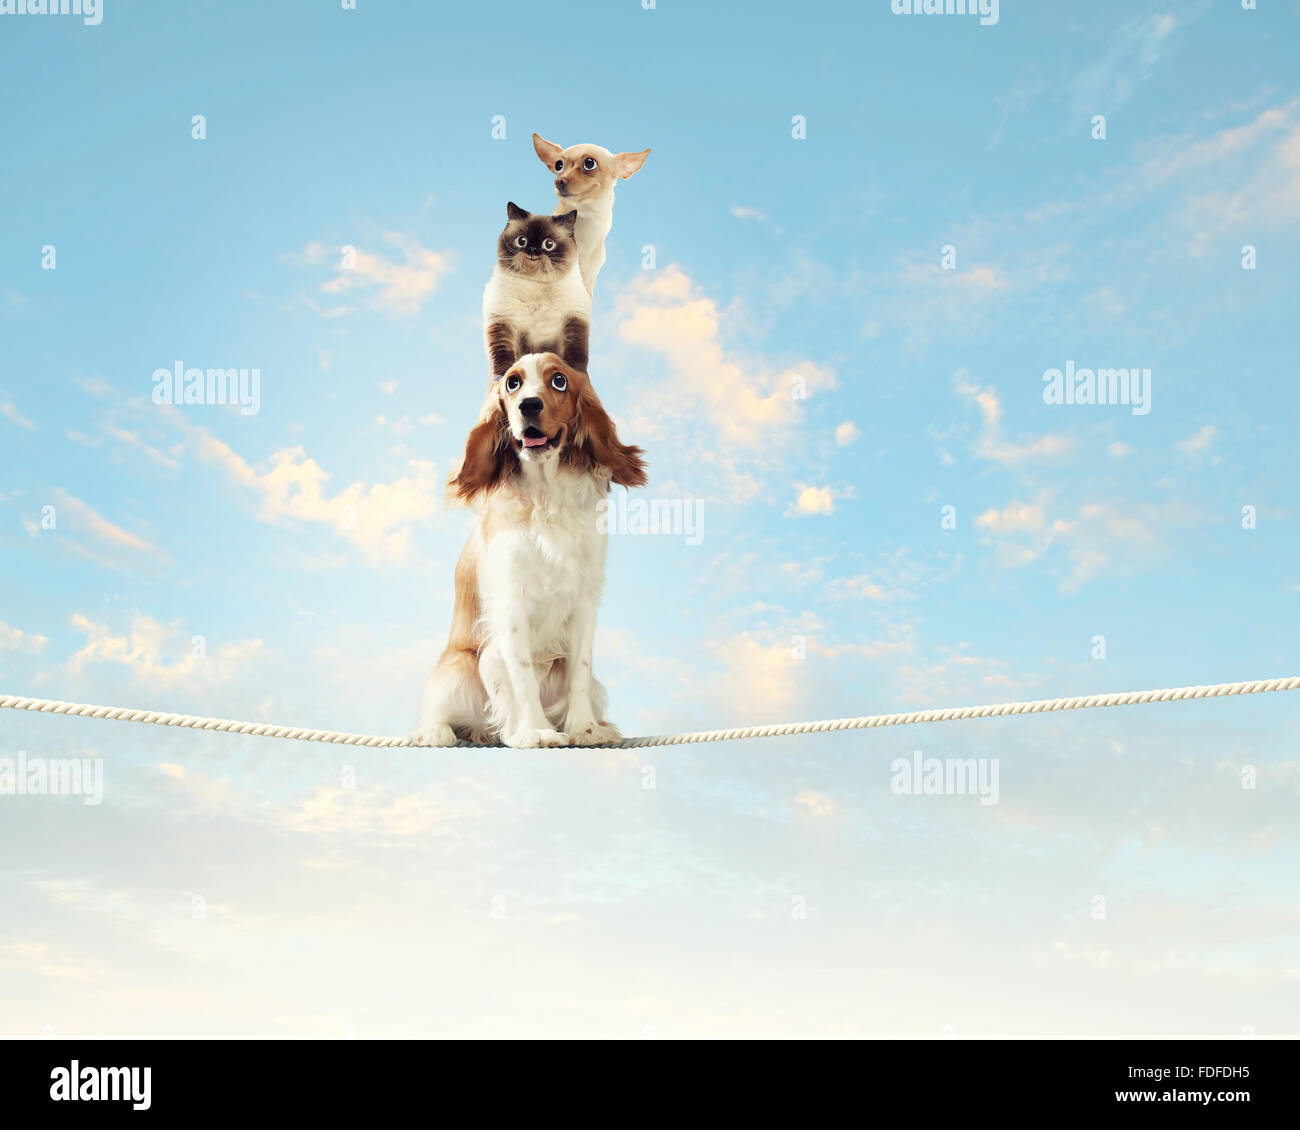 Immagine del cane spaniel bilanciamento sulla fune Foto Stock